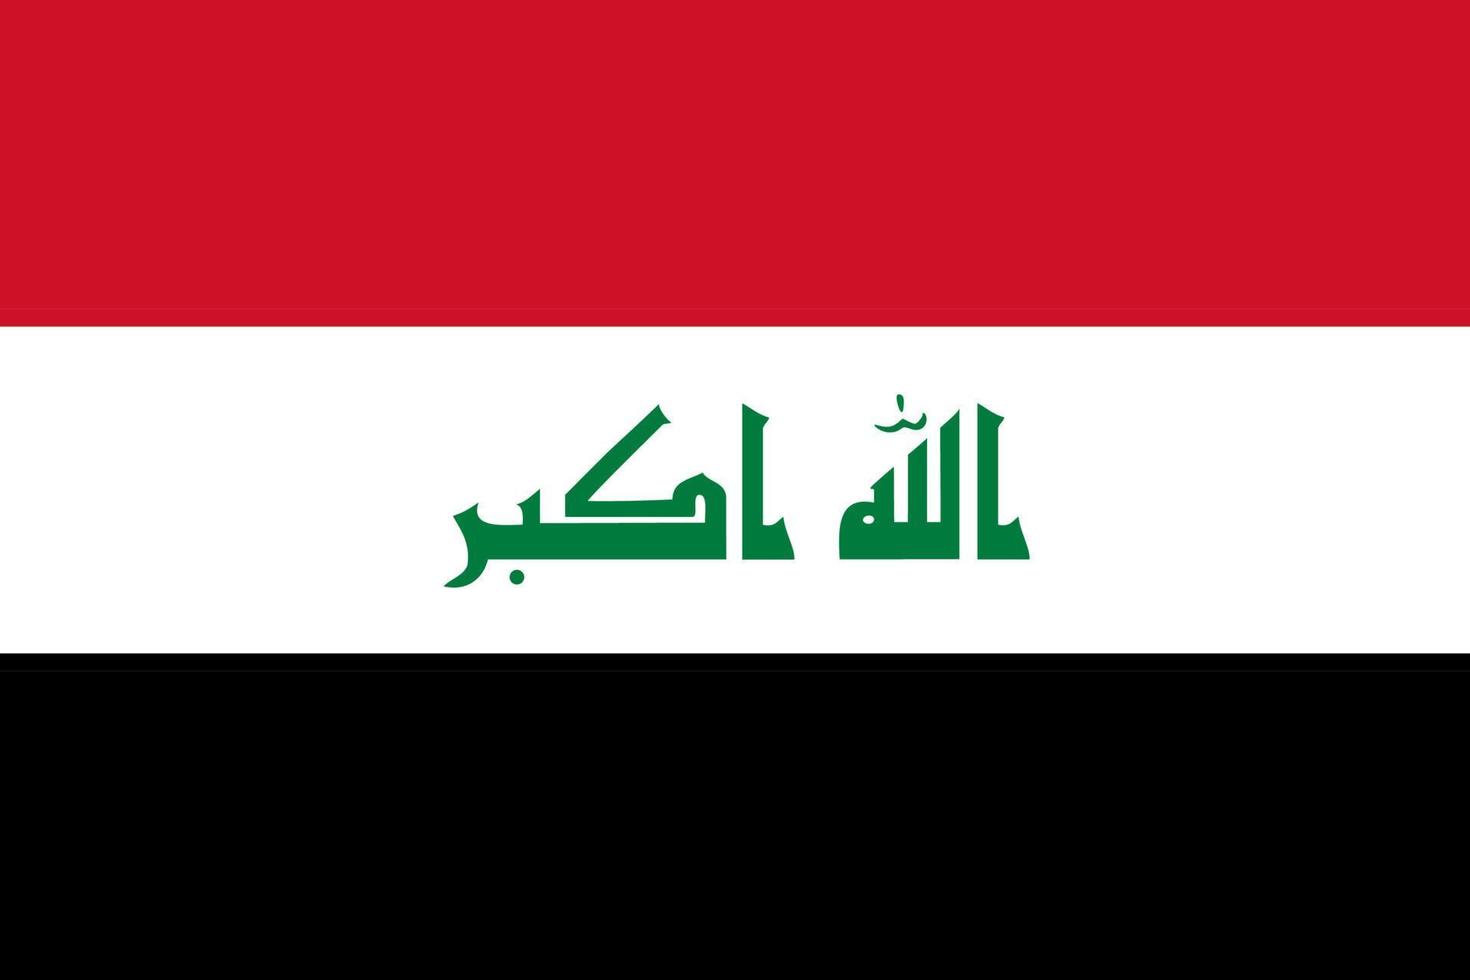 Iraque simples bandeira corrigir tamanho, proporção, cores. vetor